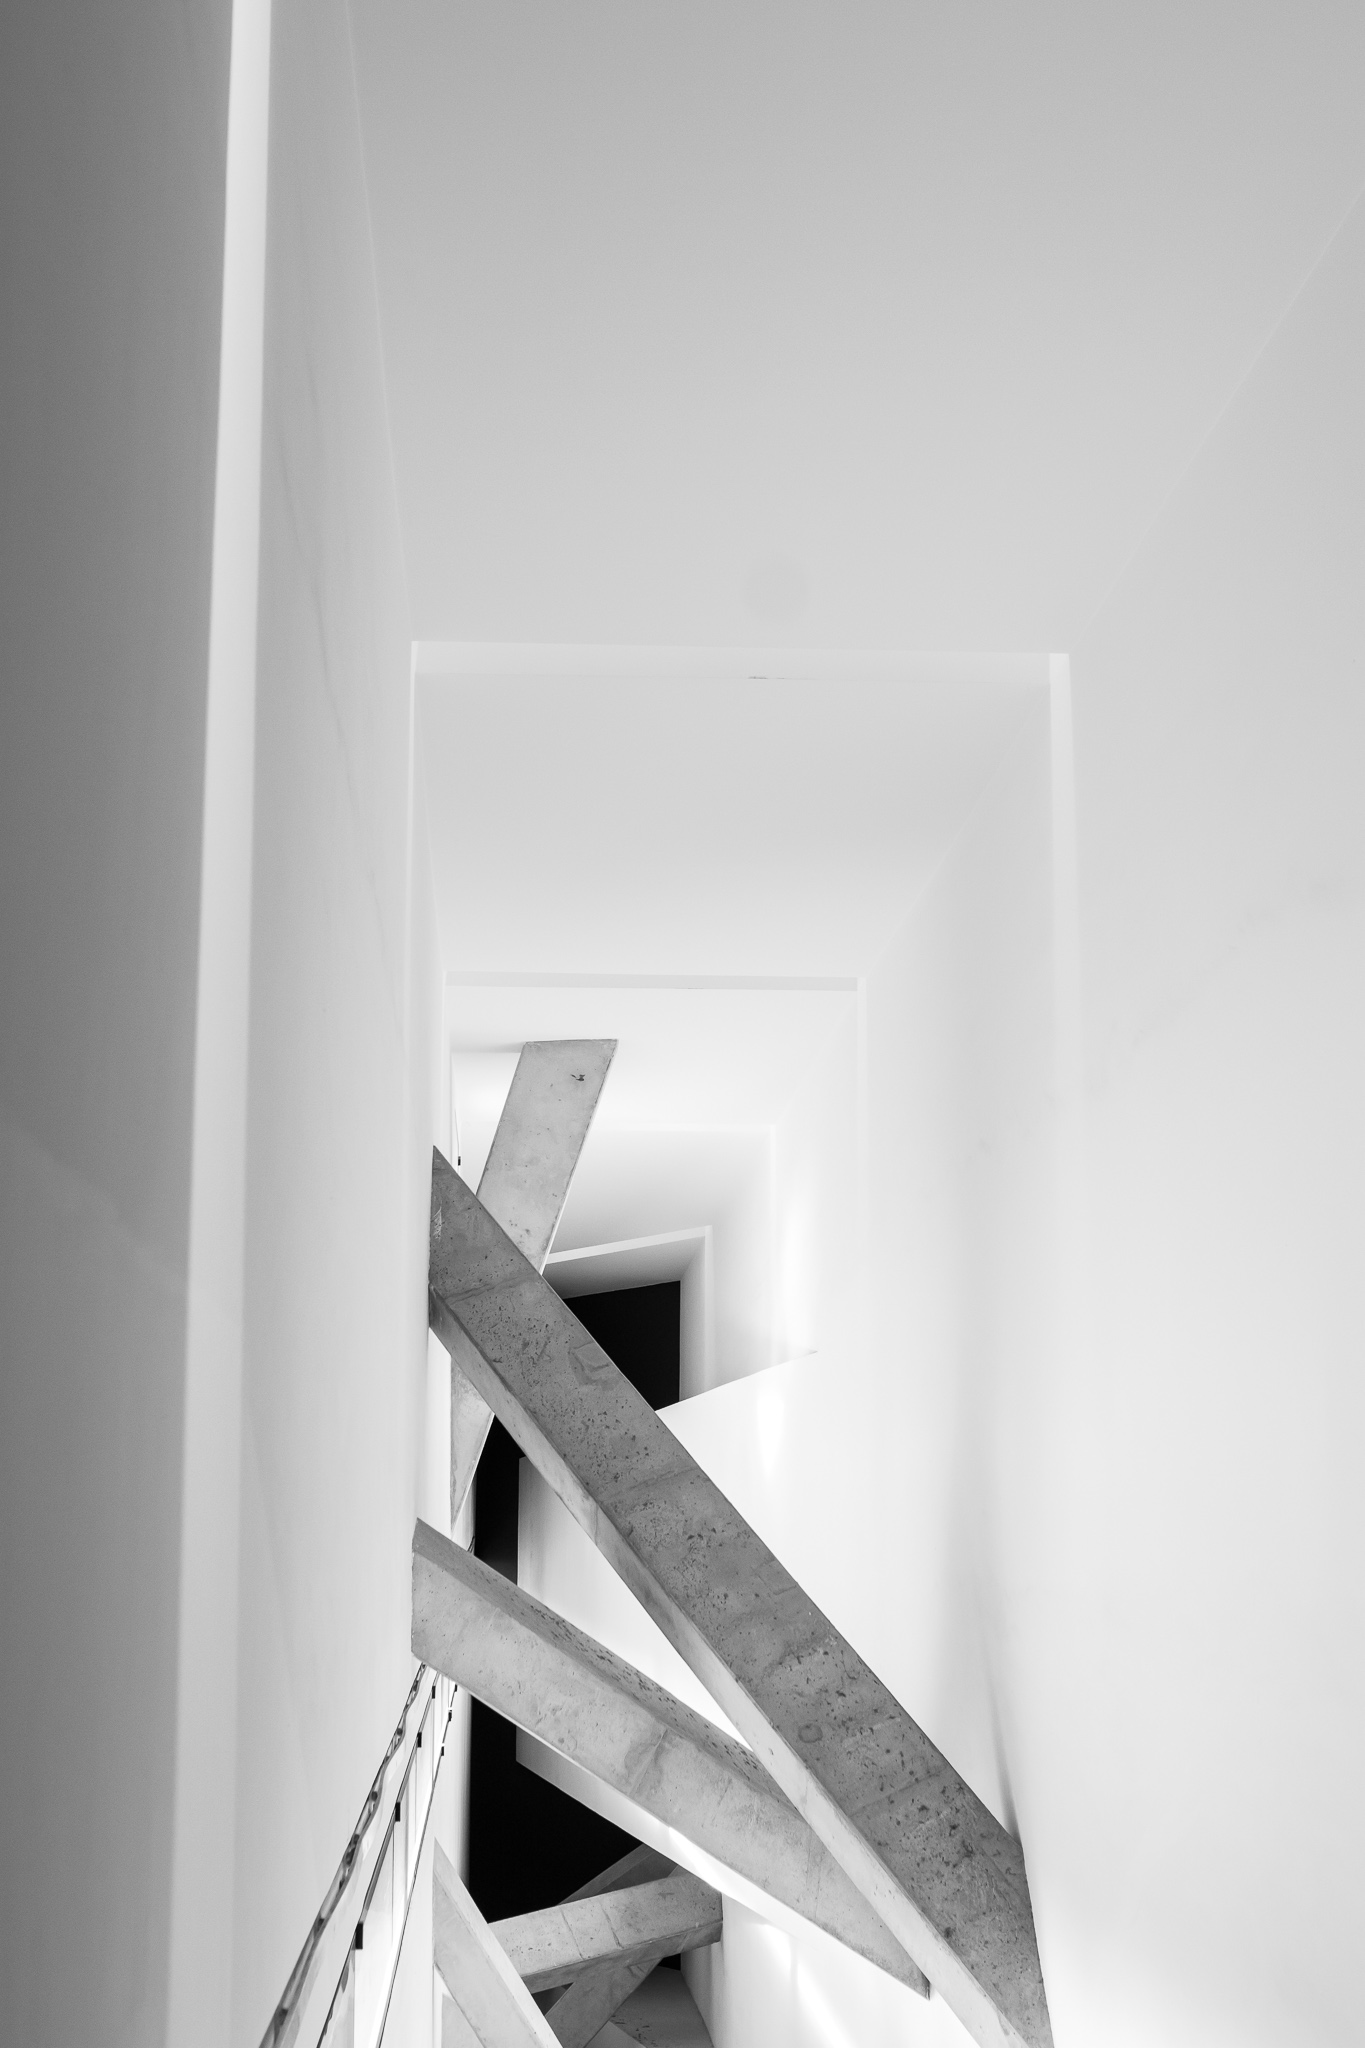 <p>Daniel Libeskind gana el concurso para el Museo Judío de Berlín en 1989, antes de haber alcanzado su popularidad actual. <br><br> El edificio, de hormigón y chapa metálica en su exterior, posee una estructura en forma de rayo o zigzag que representa una estrella de David deconstruída. <br><br> Consta de un eje de continuidad del que parte la escalera central, iluminada principalmente por la luz natural que entra por las pequeñas grietas del techo, y que continúa con la línea del edificio.</p>